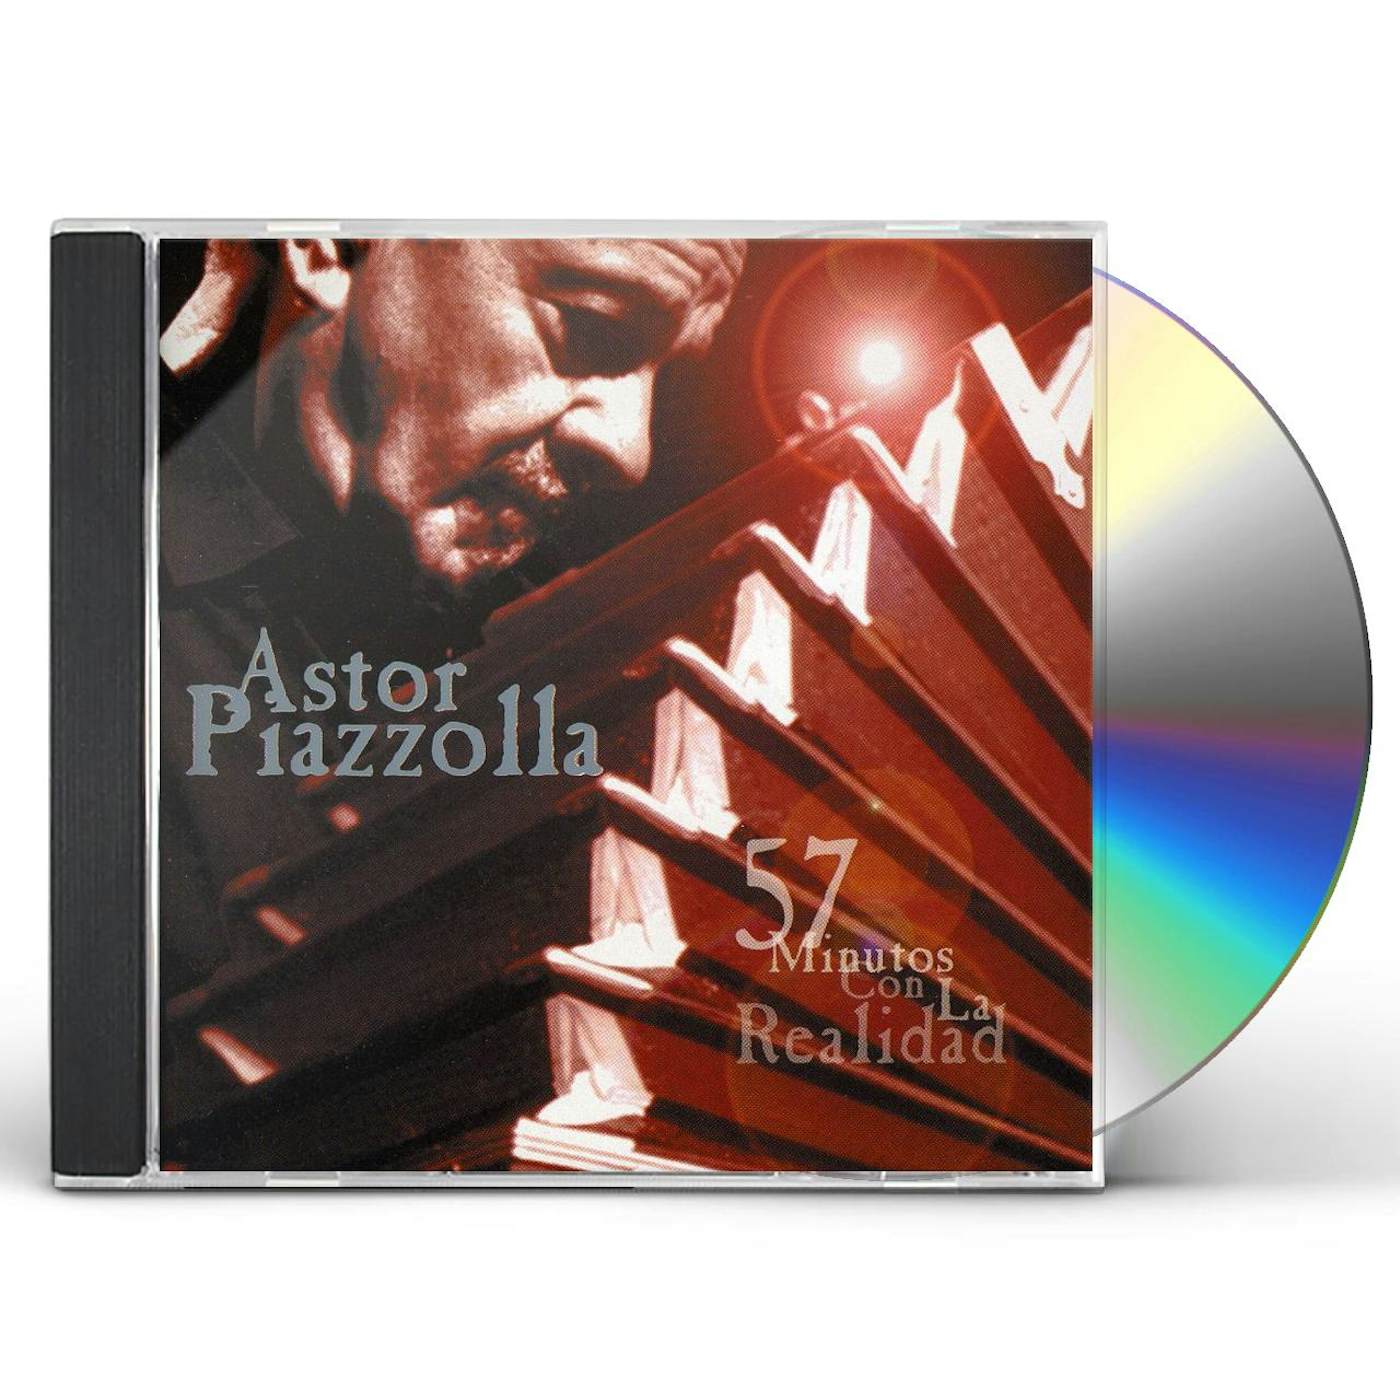 Astor Piazzolla 57 MINUTOS CON LA REALIDAD CD